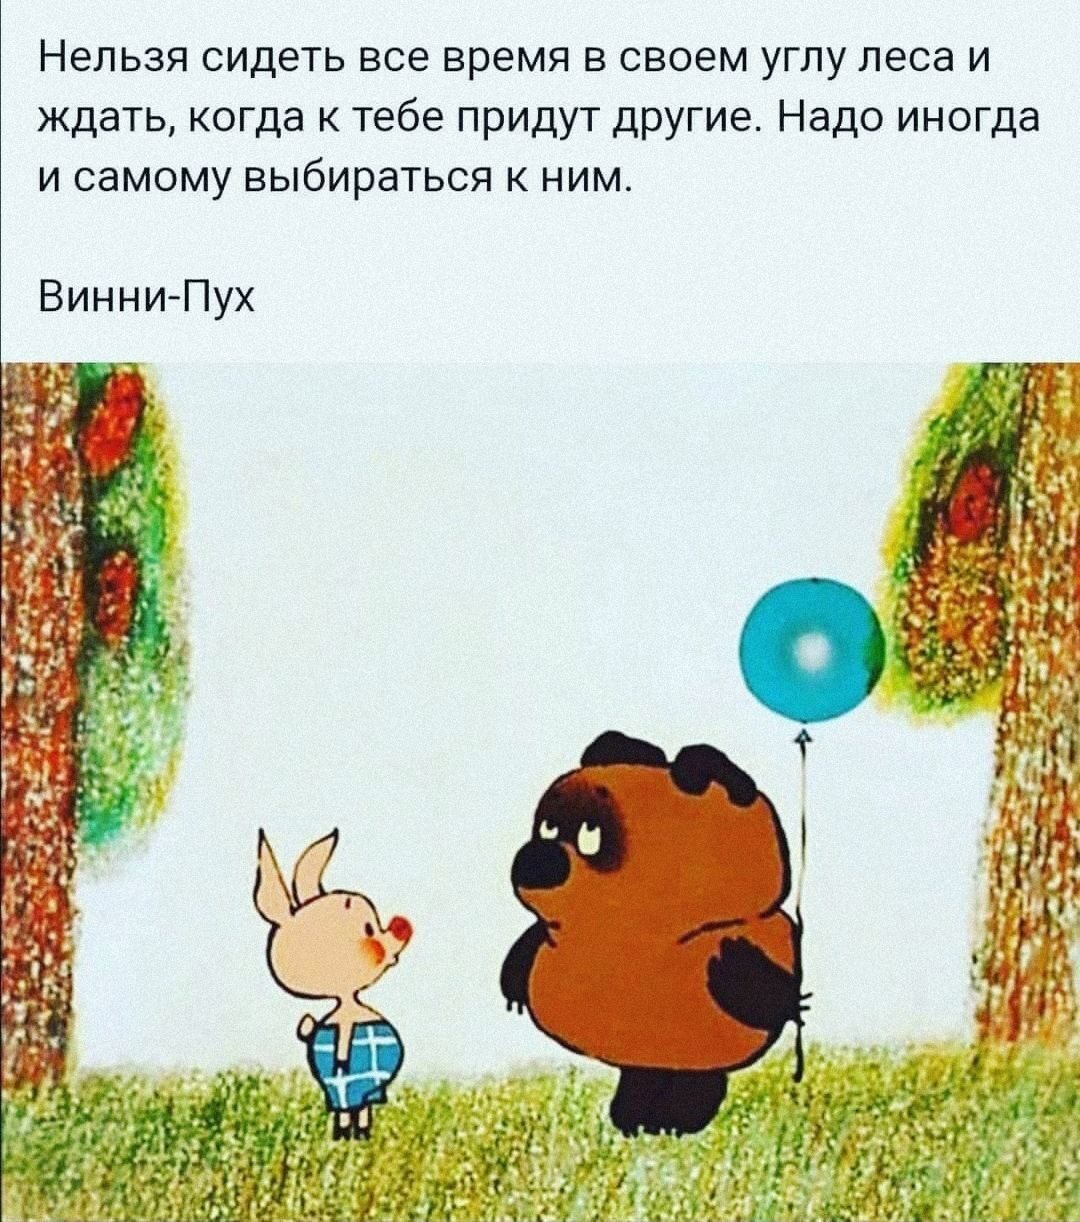 Винни-пух мультфильм Советский